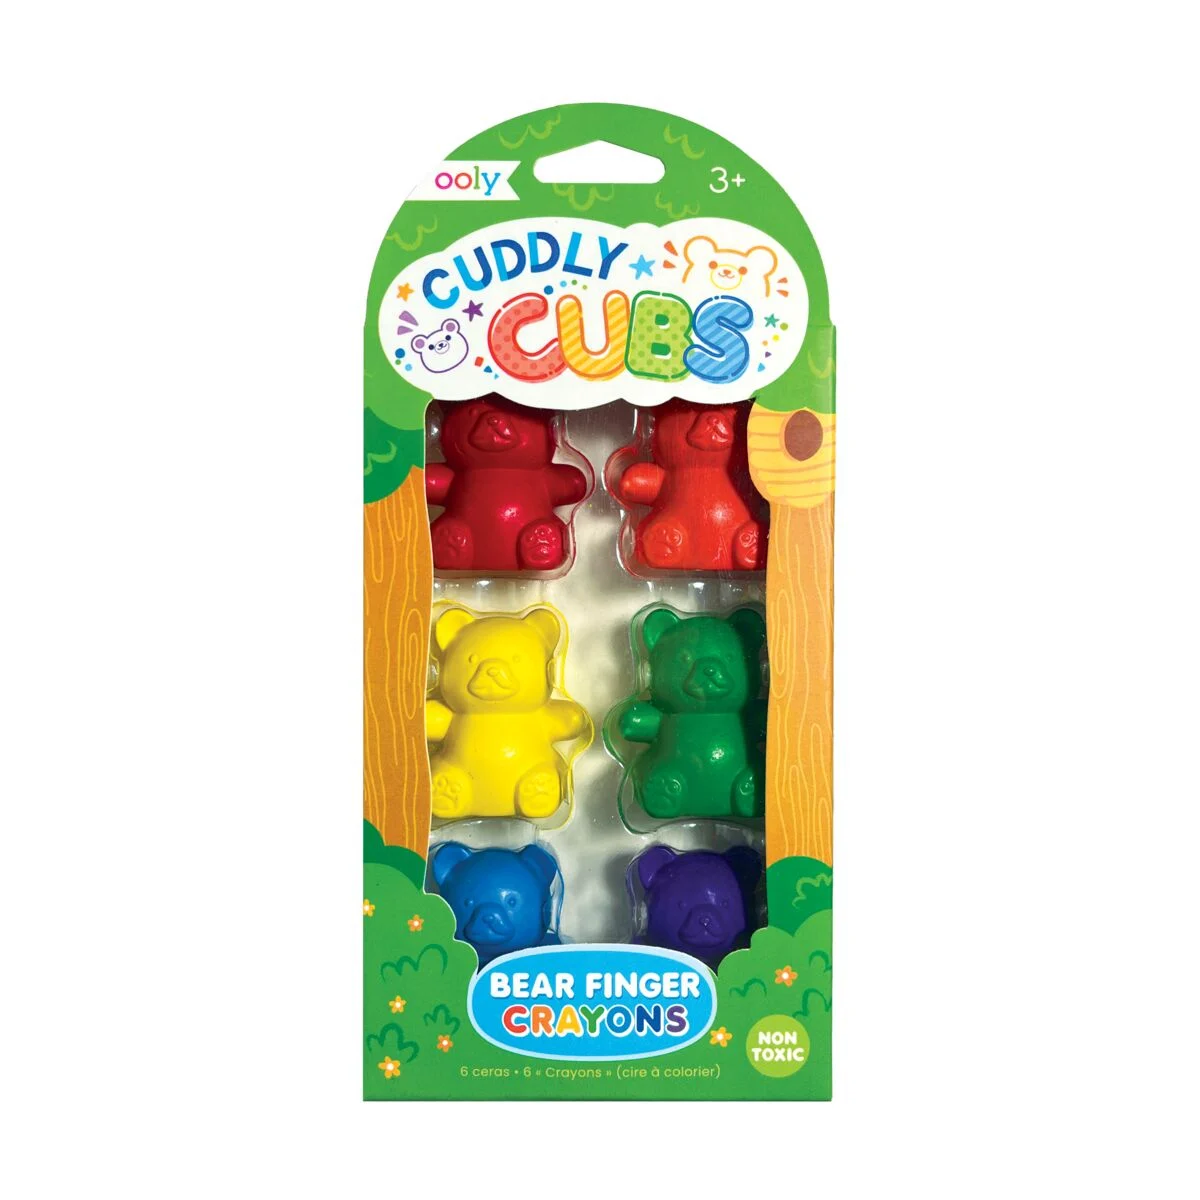 Creioane colorate pentru degete Cuddly Cubs Bear, set de 6 bucati, Ooly